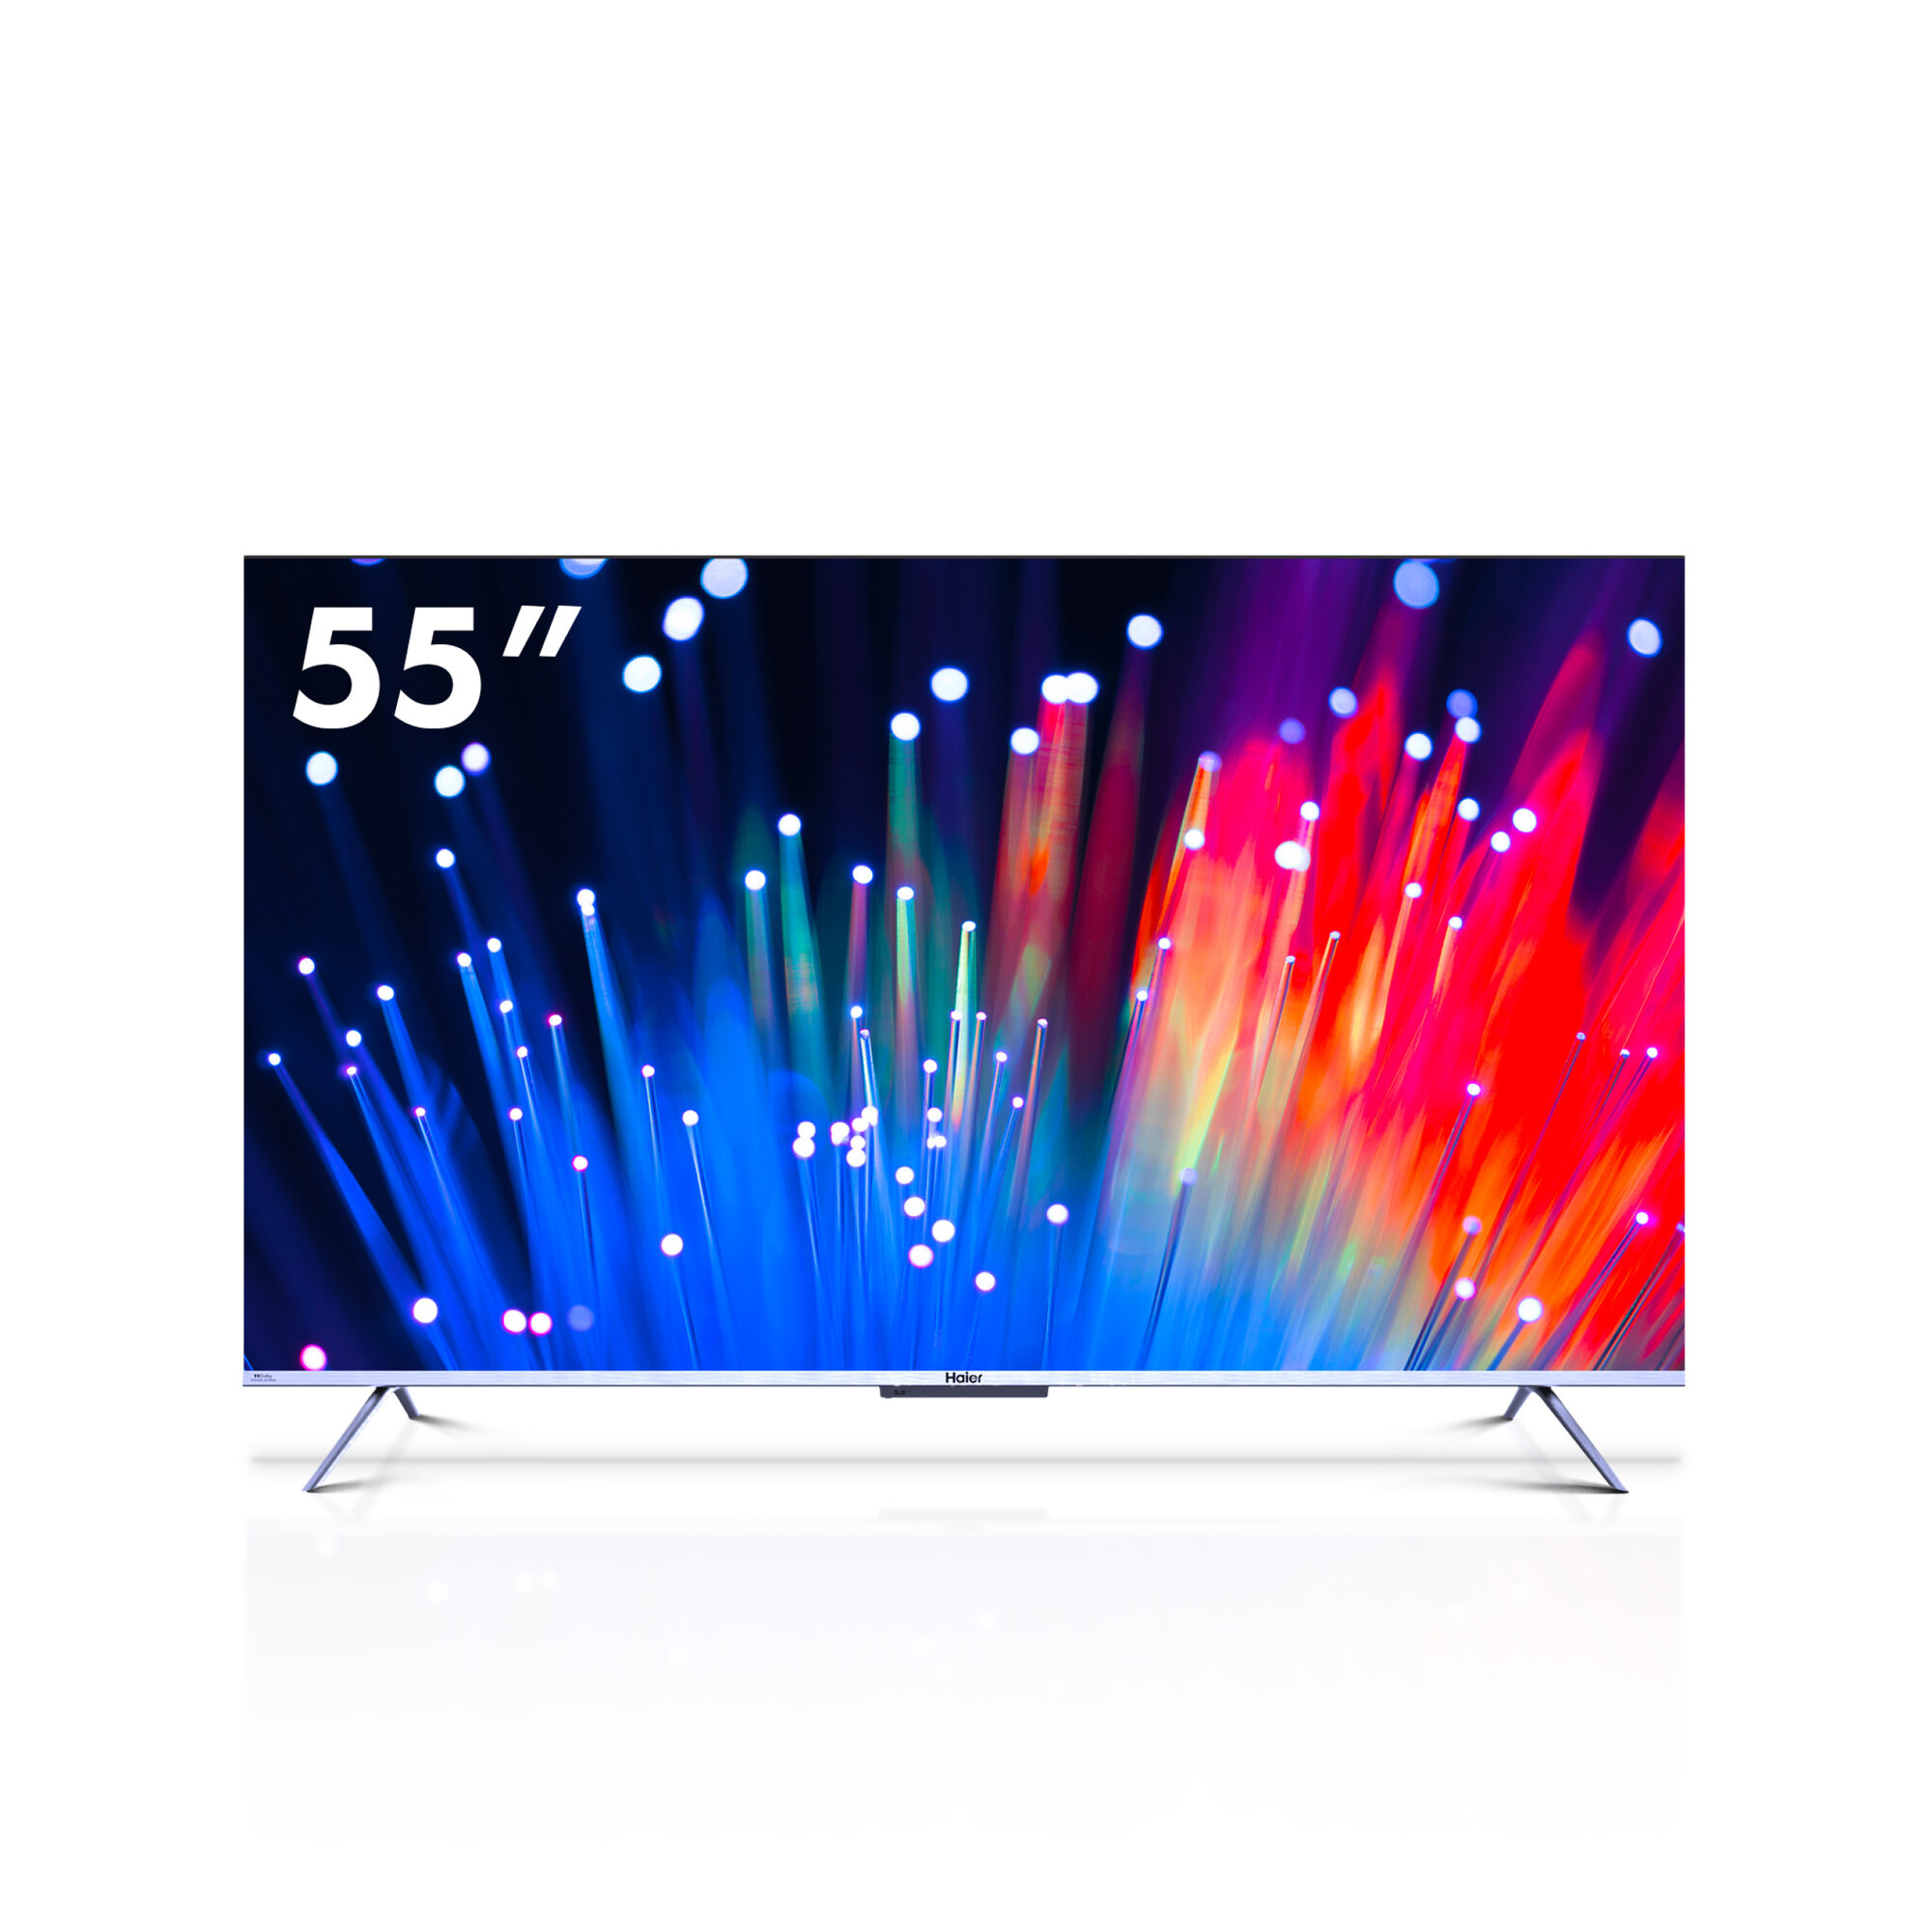 55" Телевизор Haier 55 Smart TV S3 HDR LED QLED HQLED